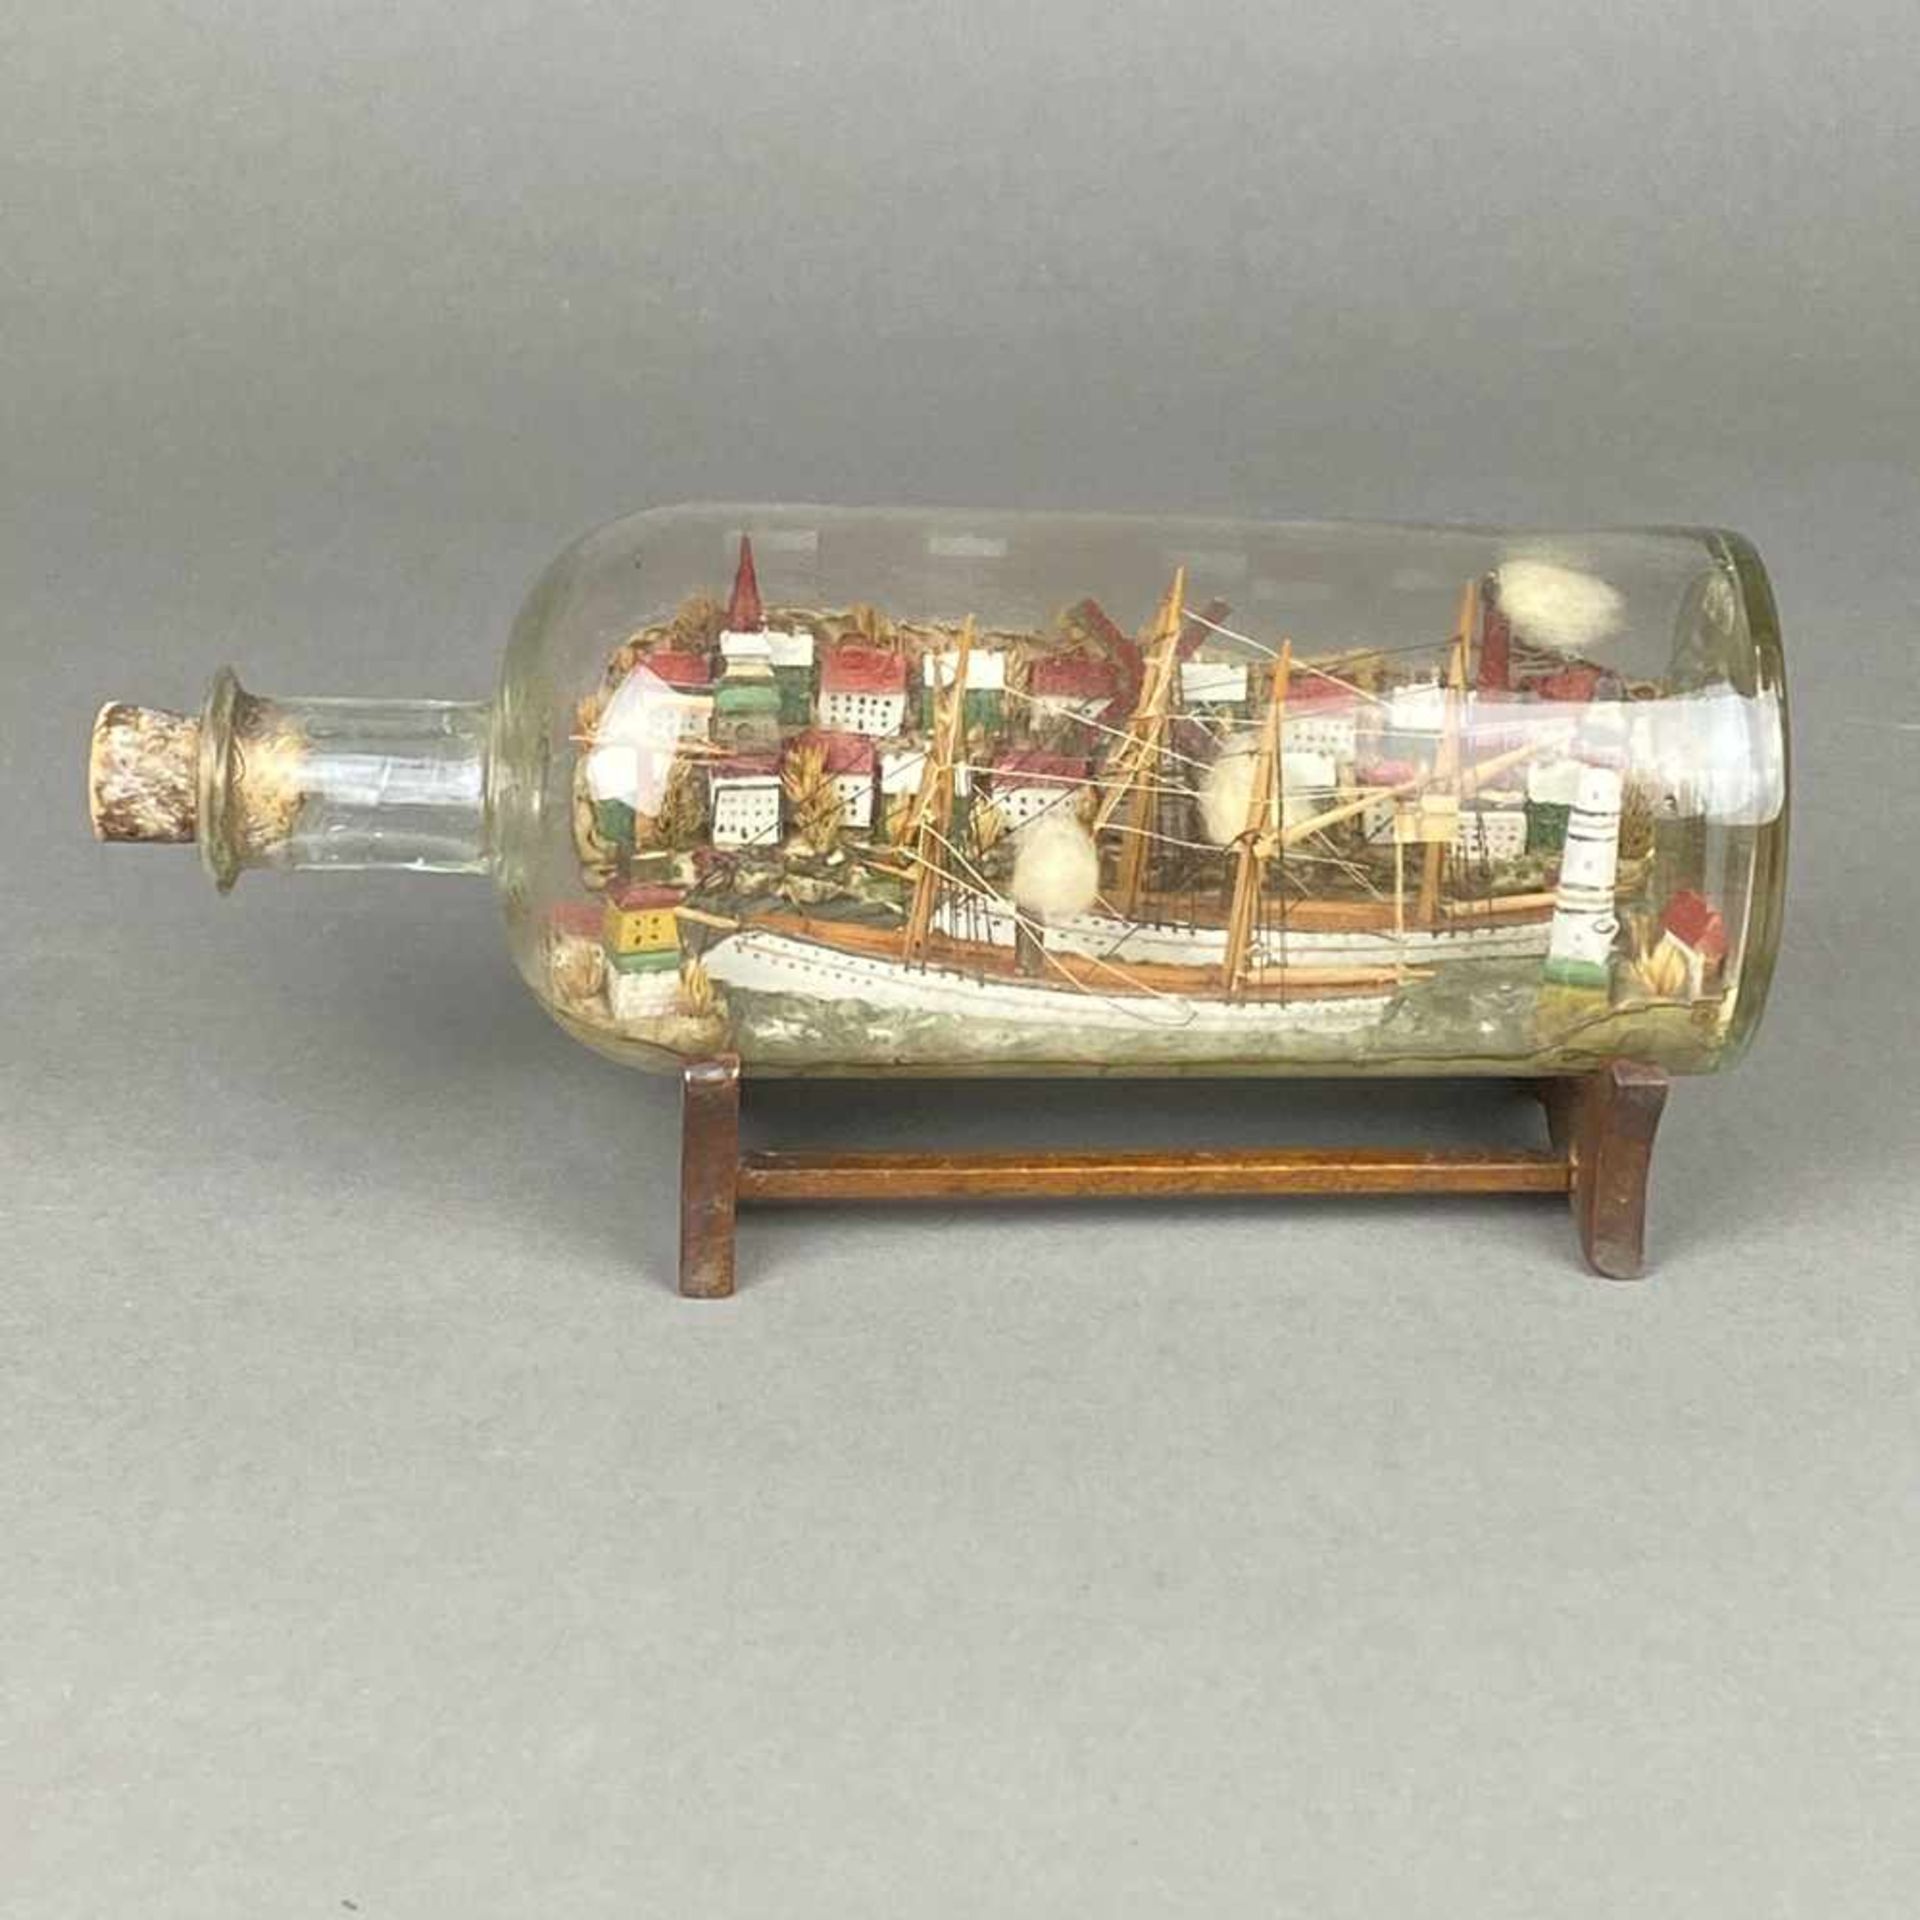 Buddelschiff - Glas/Holz/Masse/etc., bemalt, in farbloser Glasflasche zwei Segeldampfer auf